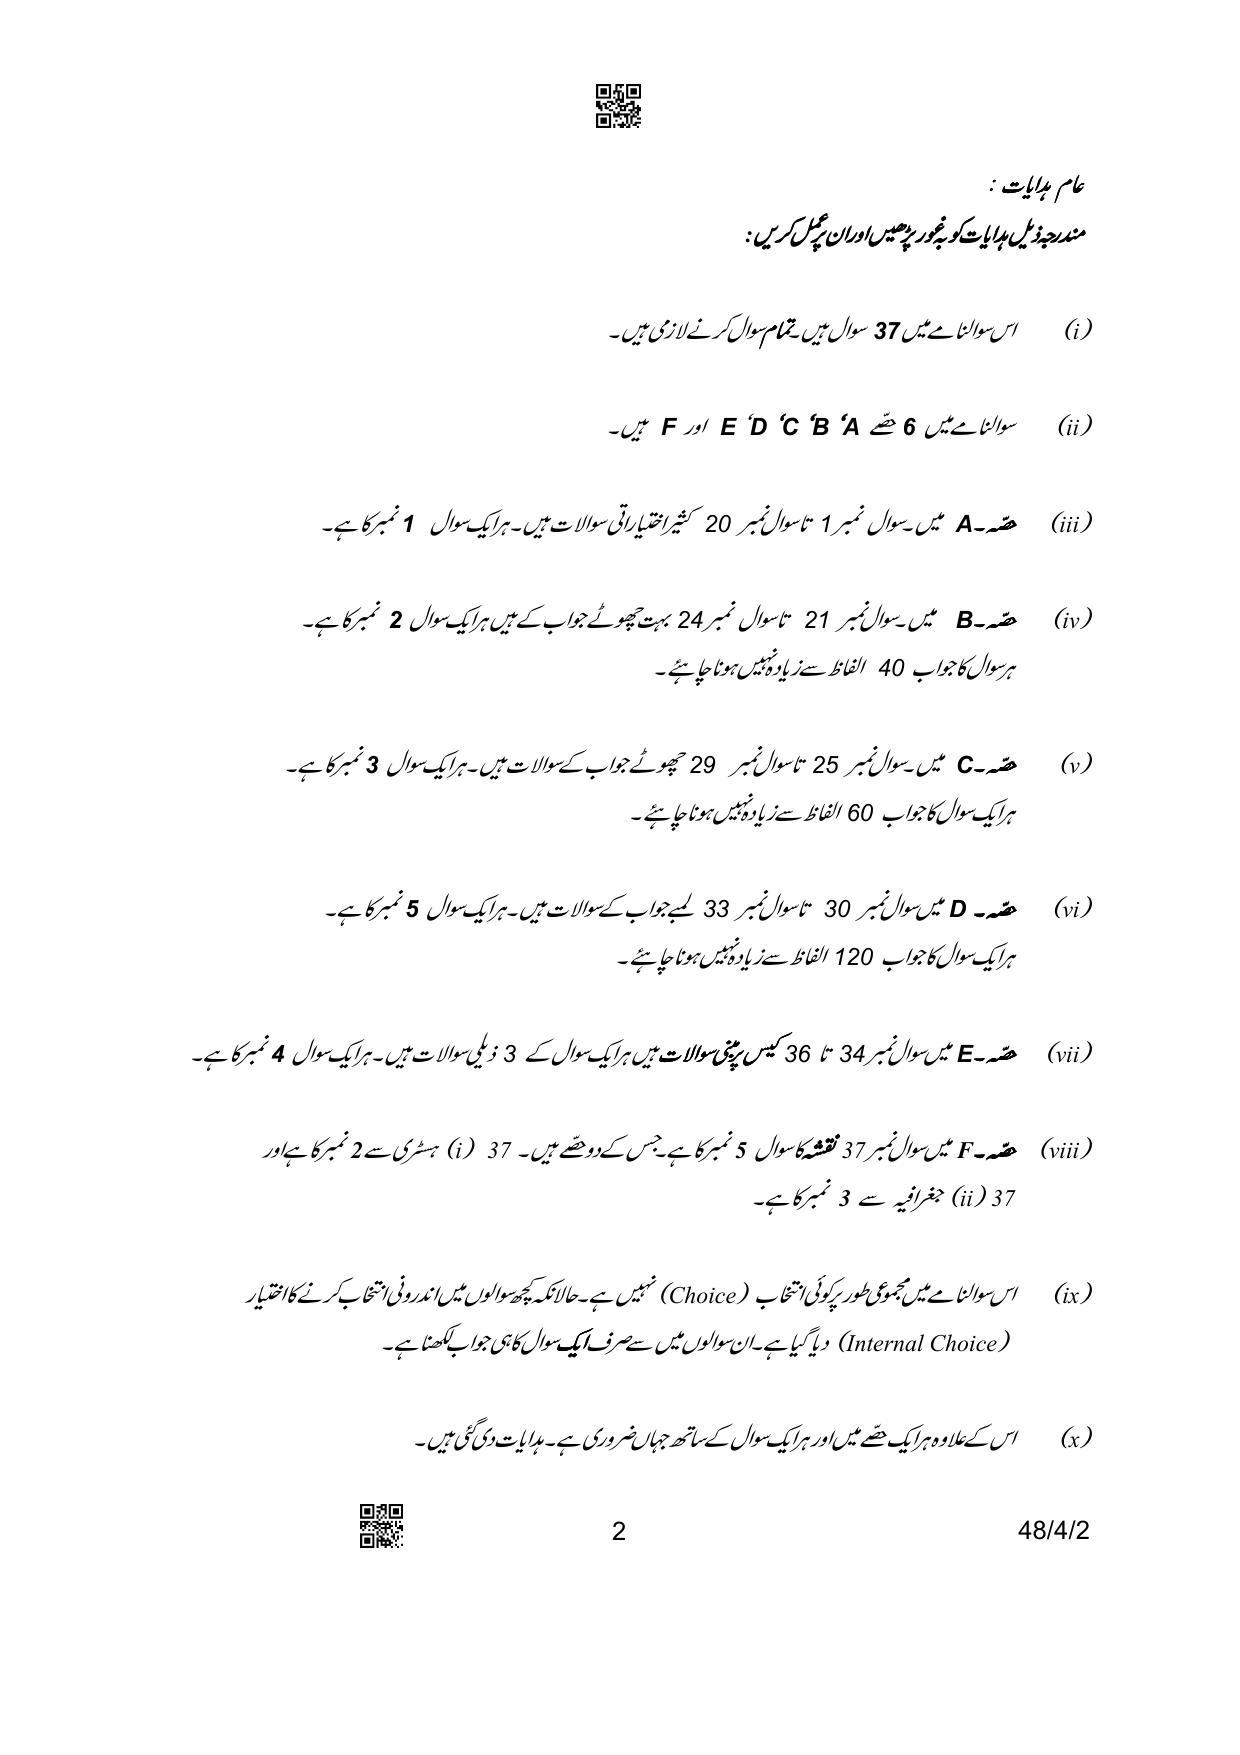 CBSE Class 10 48-4-2 Social Science Urdu Version 2023 Question Paper - Page 2